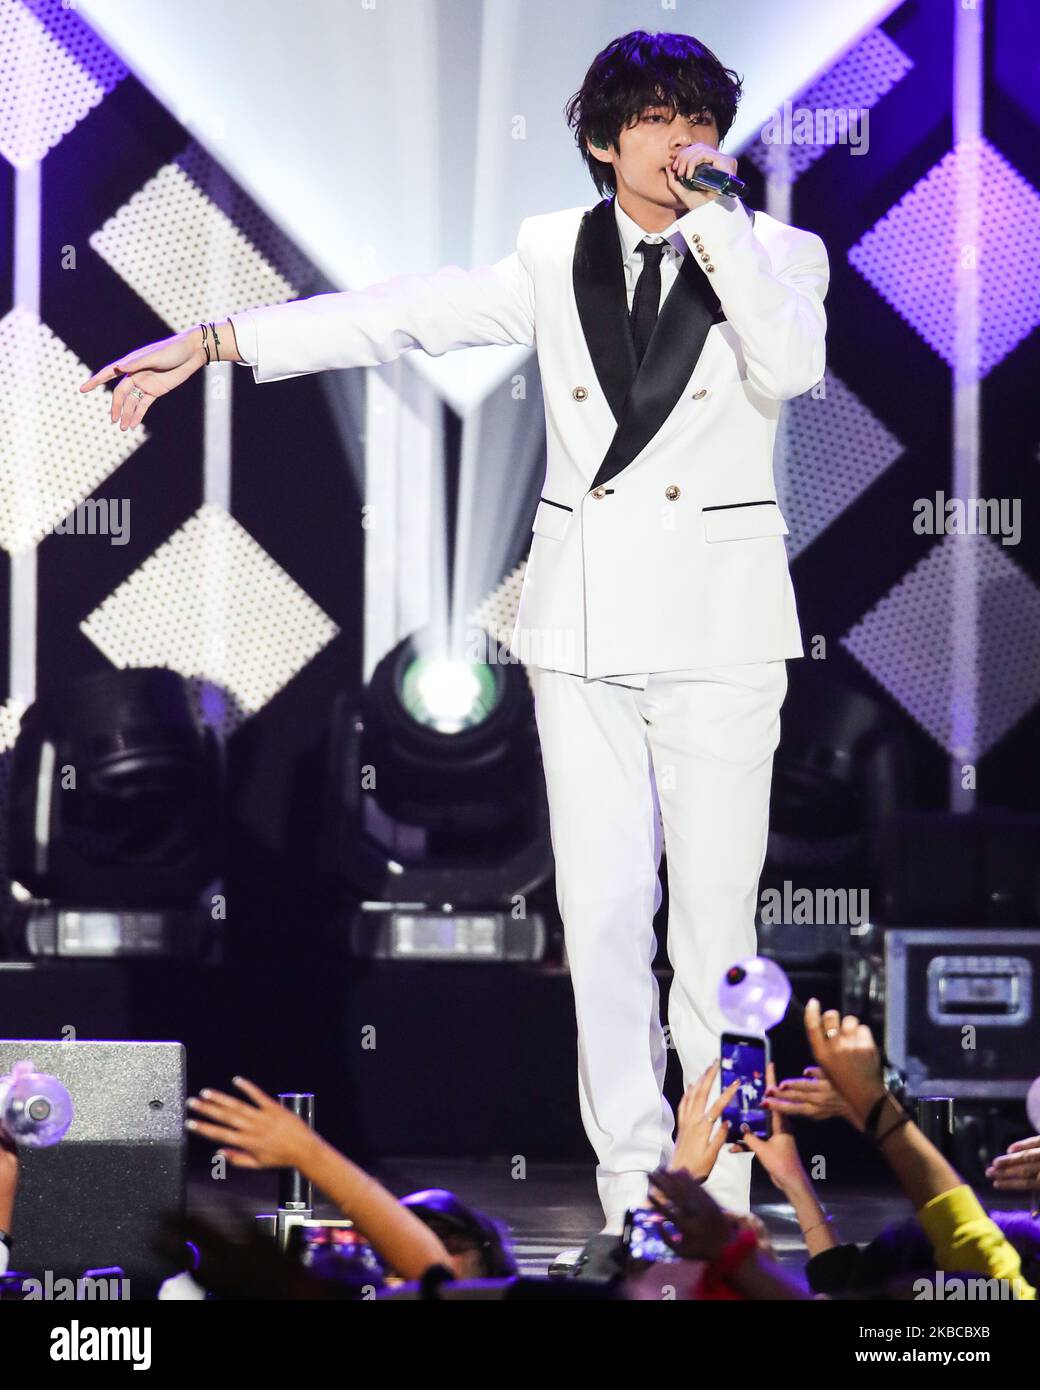 BTS Kim Seokjin - Jin in white suit be looking like a